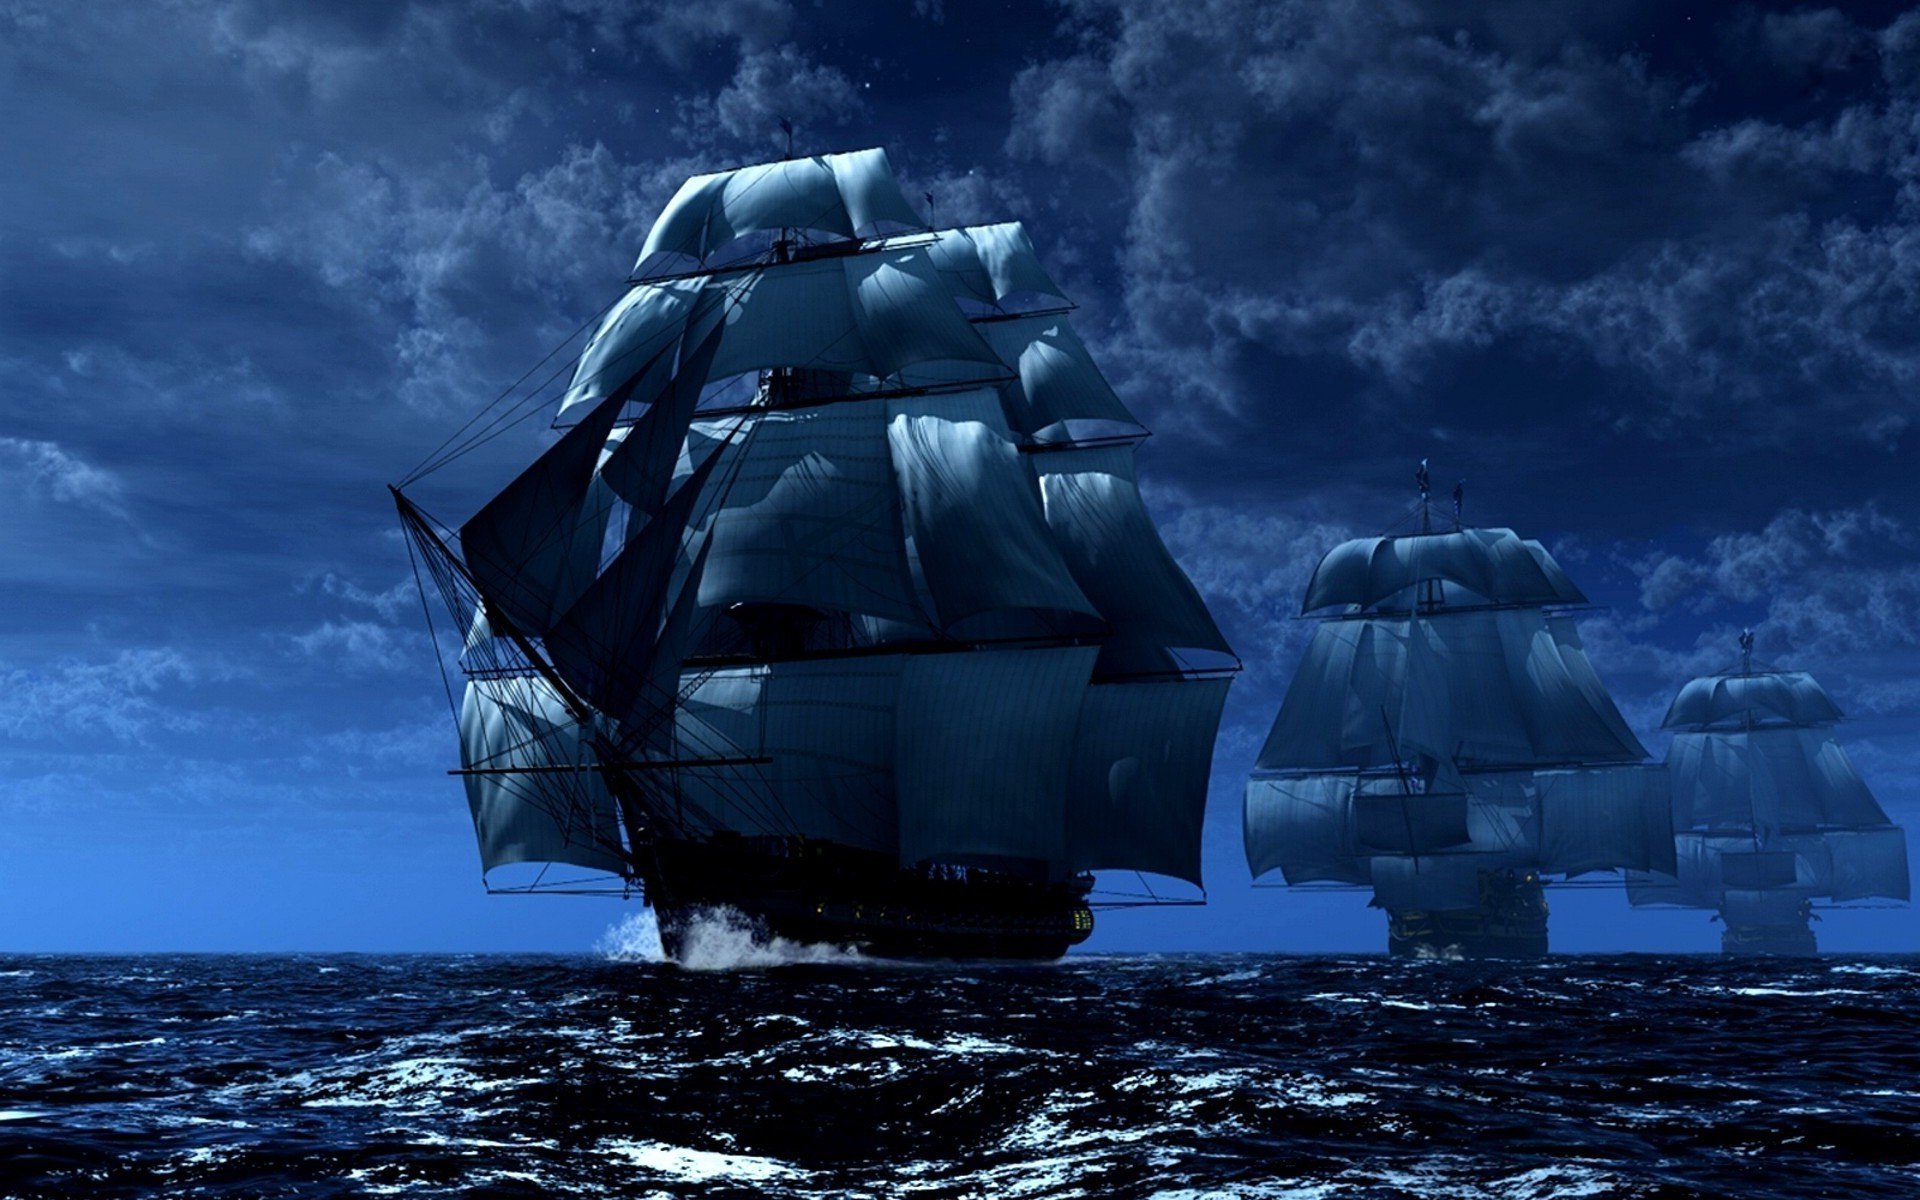 Pirate ship wallpaper by Apache_jr - Download on ZEDGE™ | 91e4